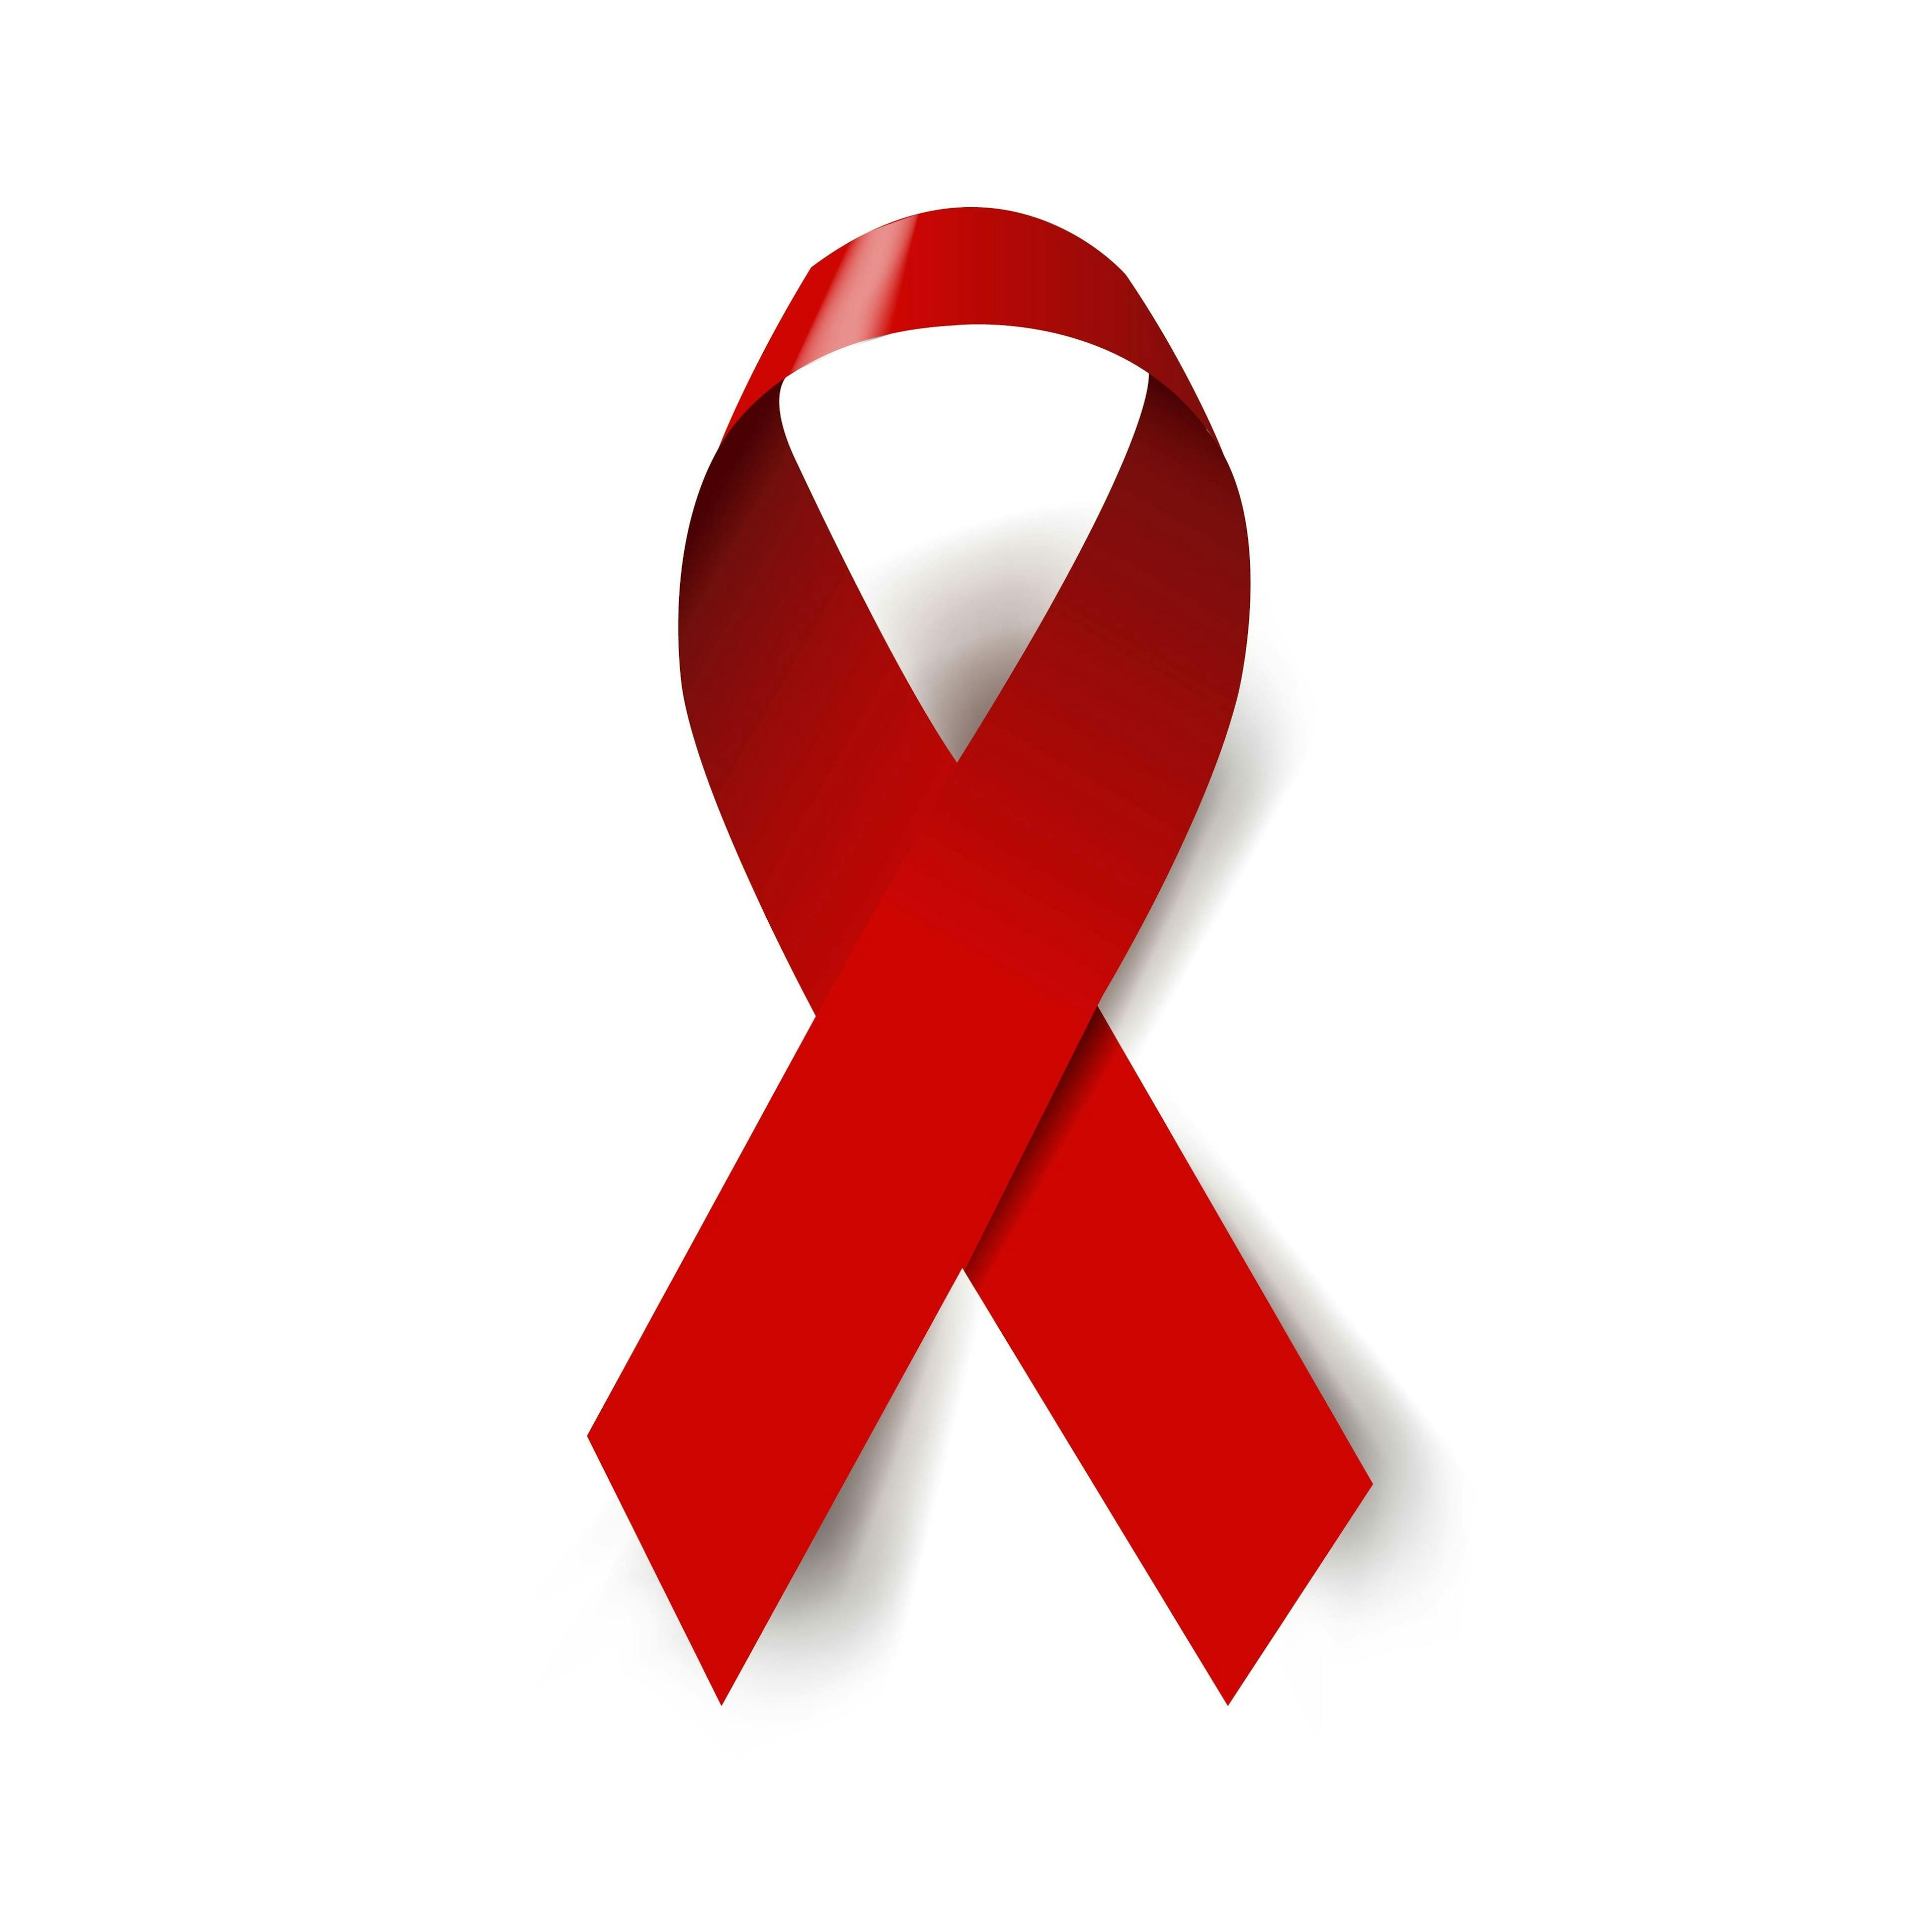 HIV Awareness Ribbon | Image credit: barbaliss - stock.adobe.com